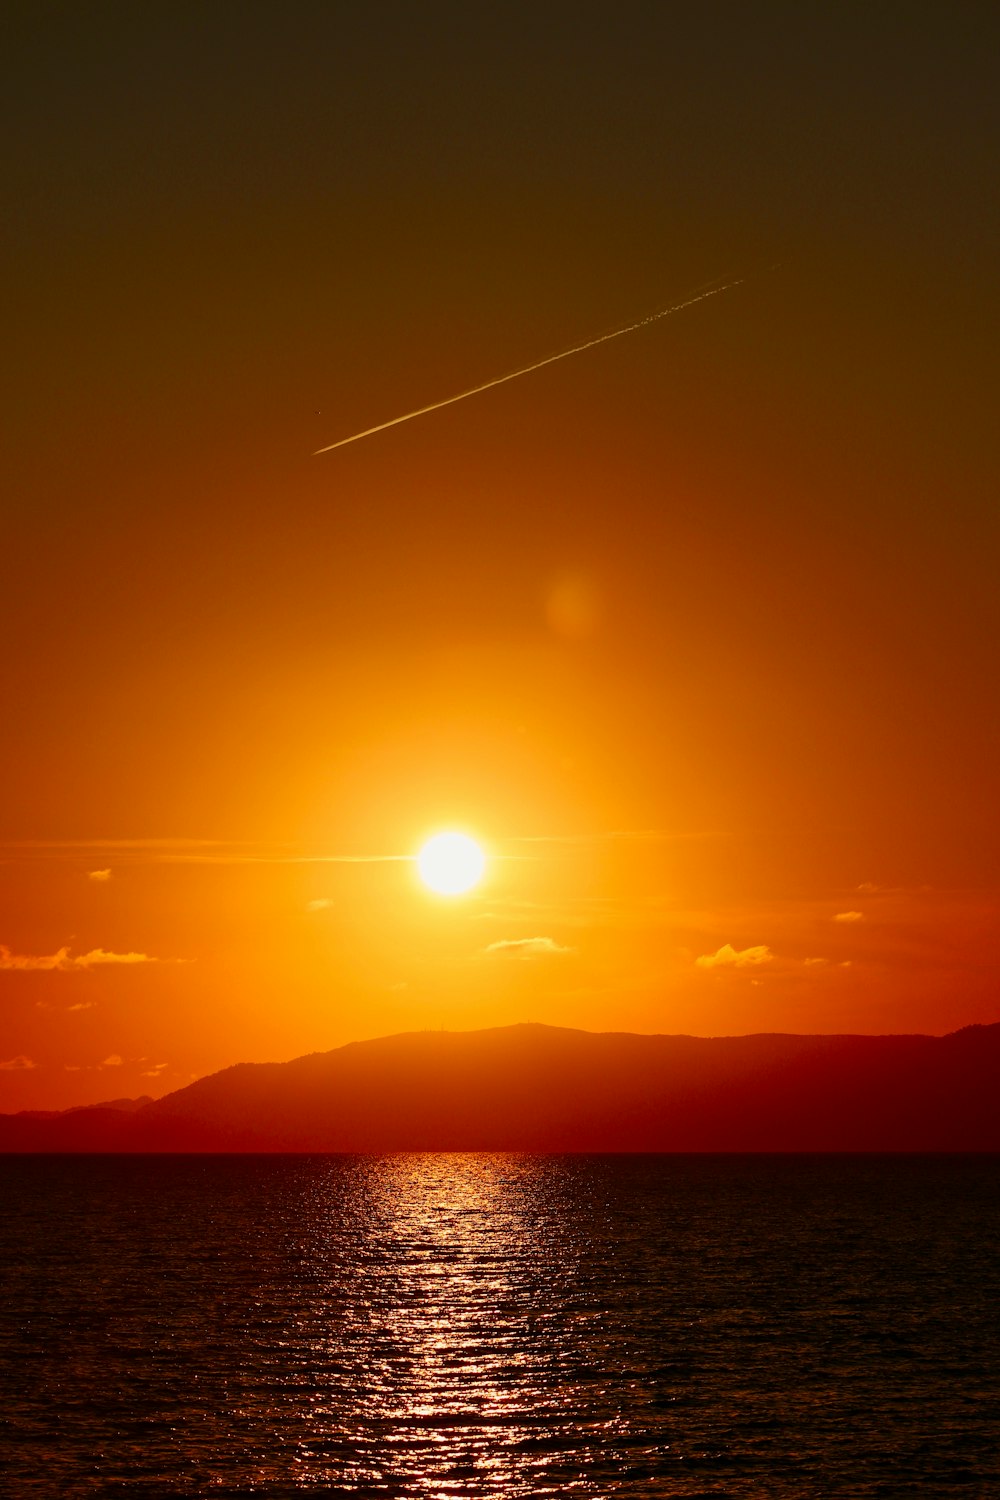 Il sole sta tramontando sull'oceano con un aereo nel cielo